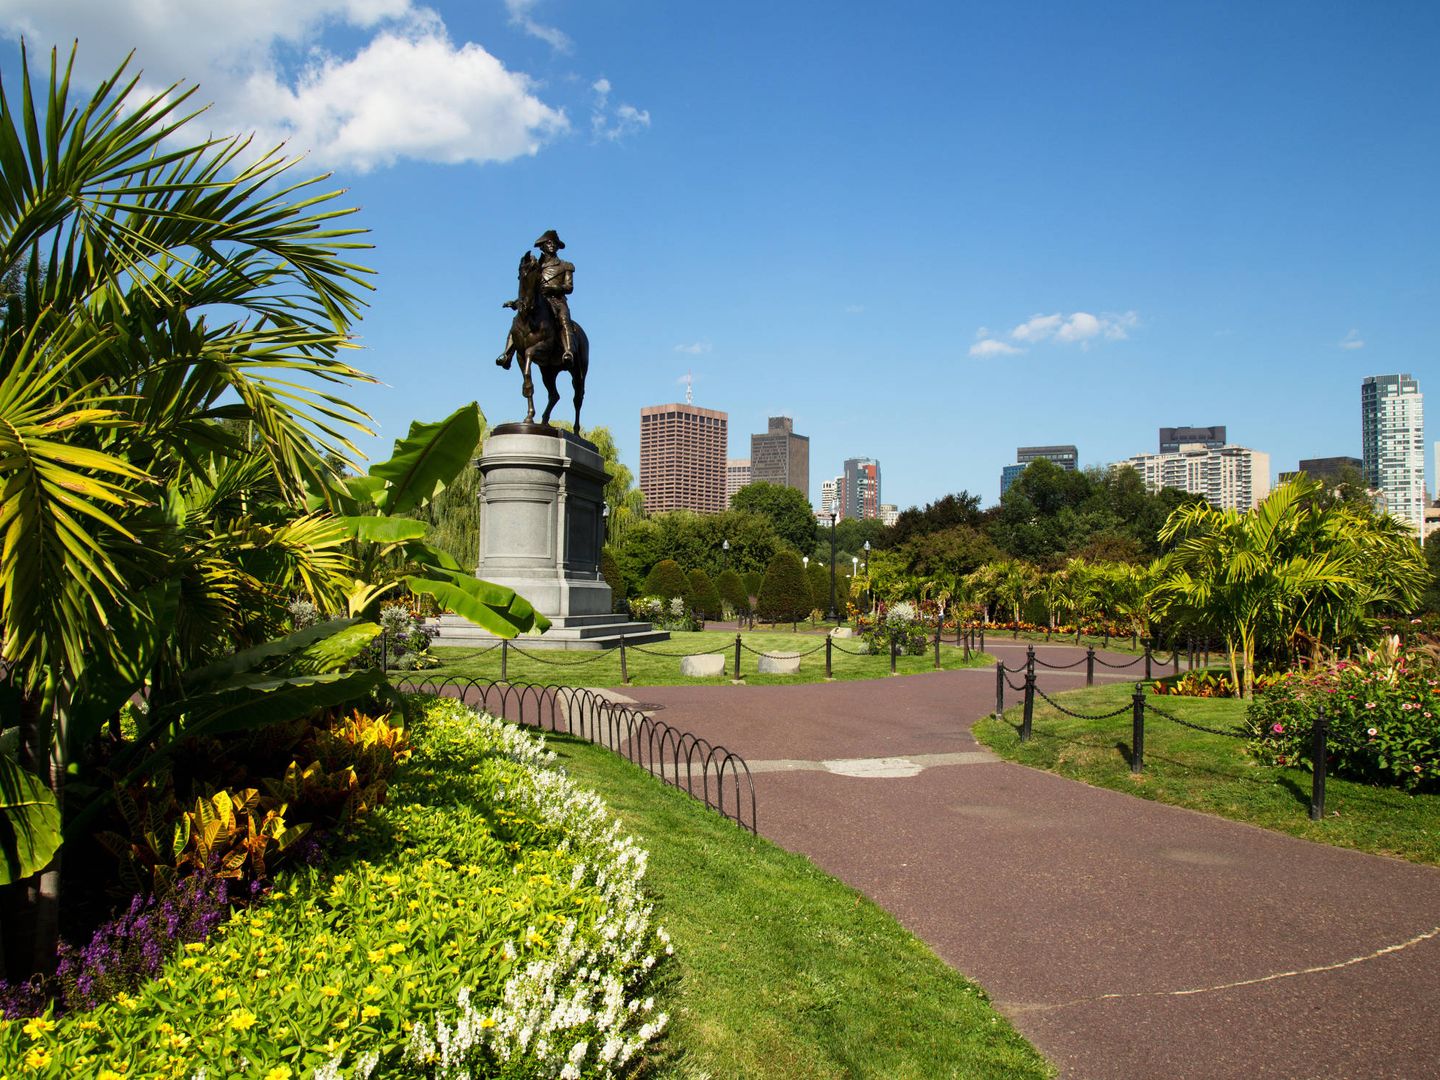  Boston. (Shutterstock)